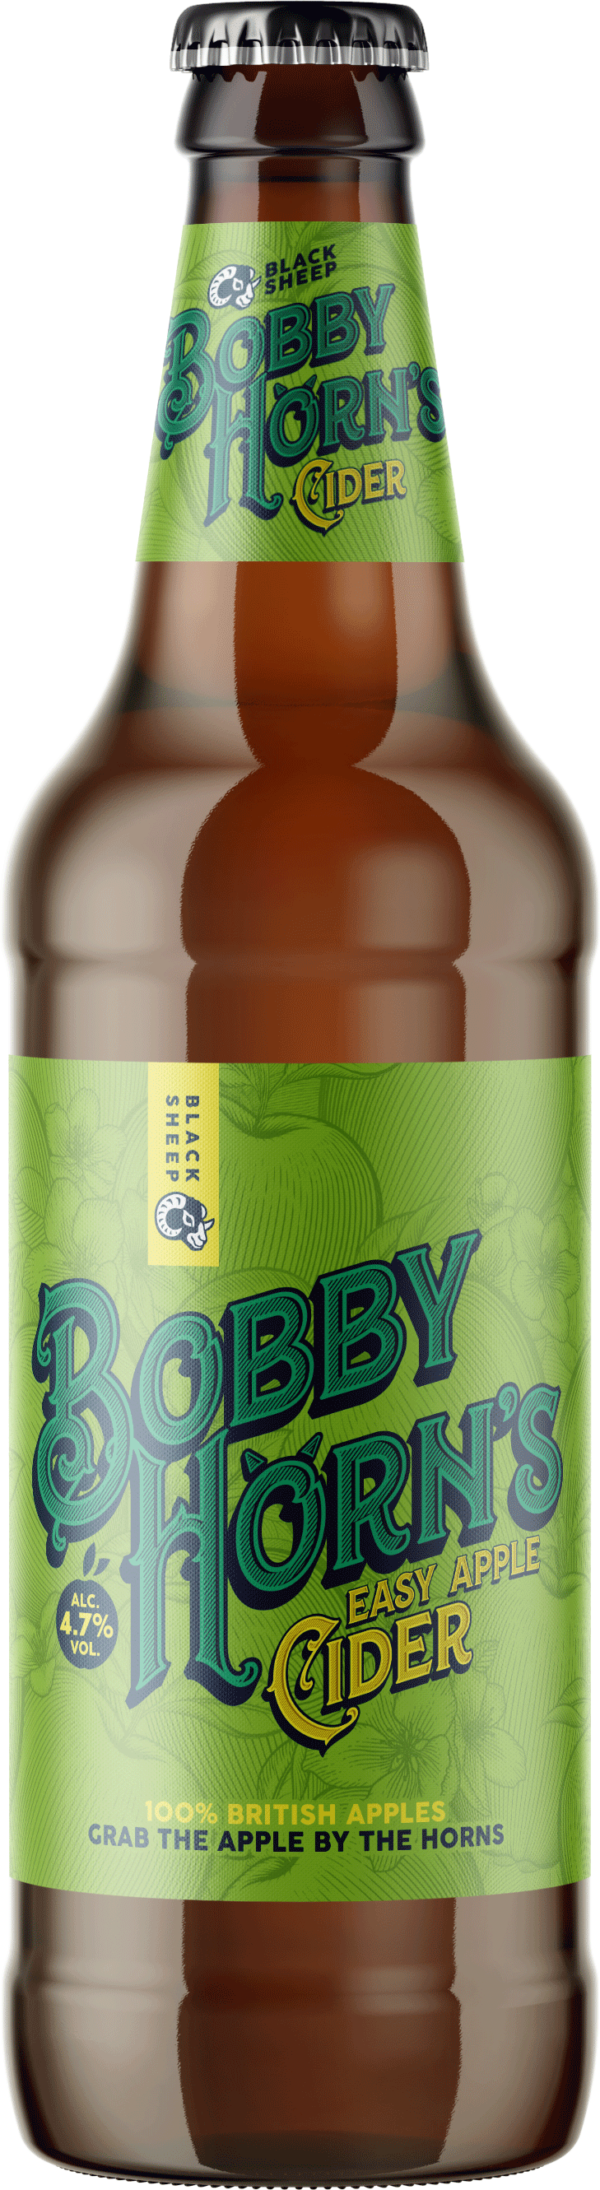 Bottle of Bobby Horn's Apple Cider